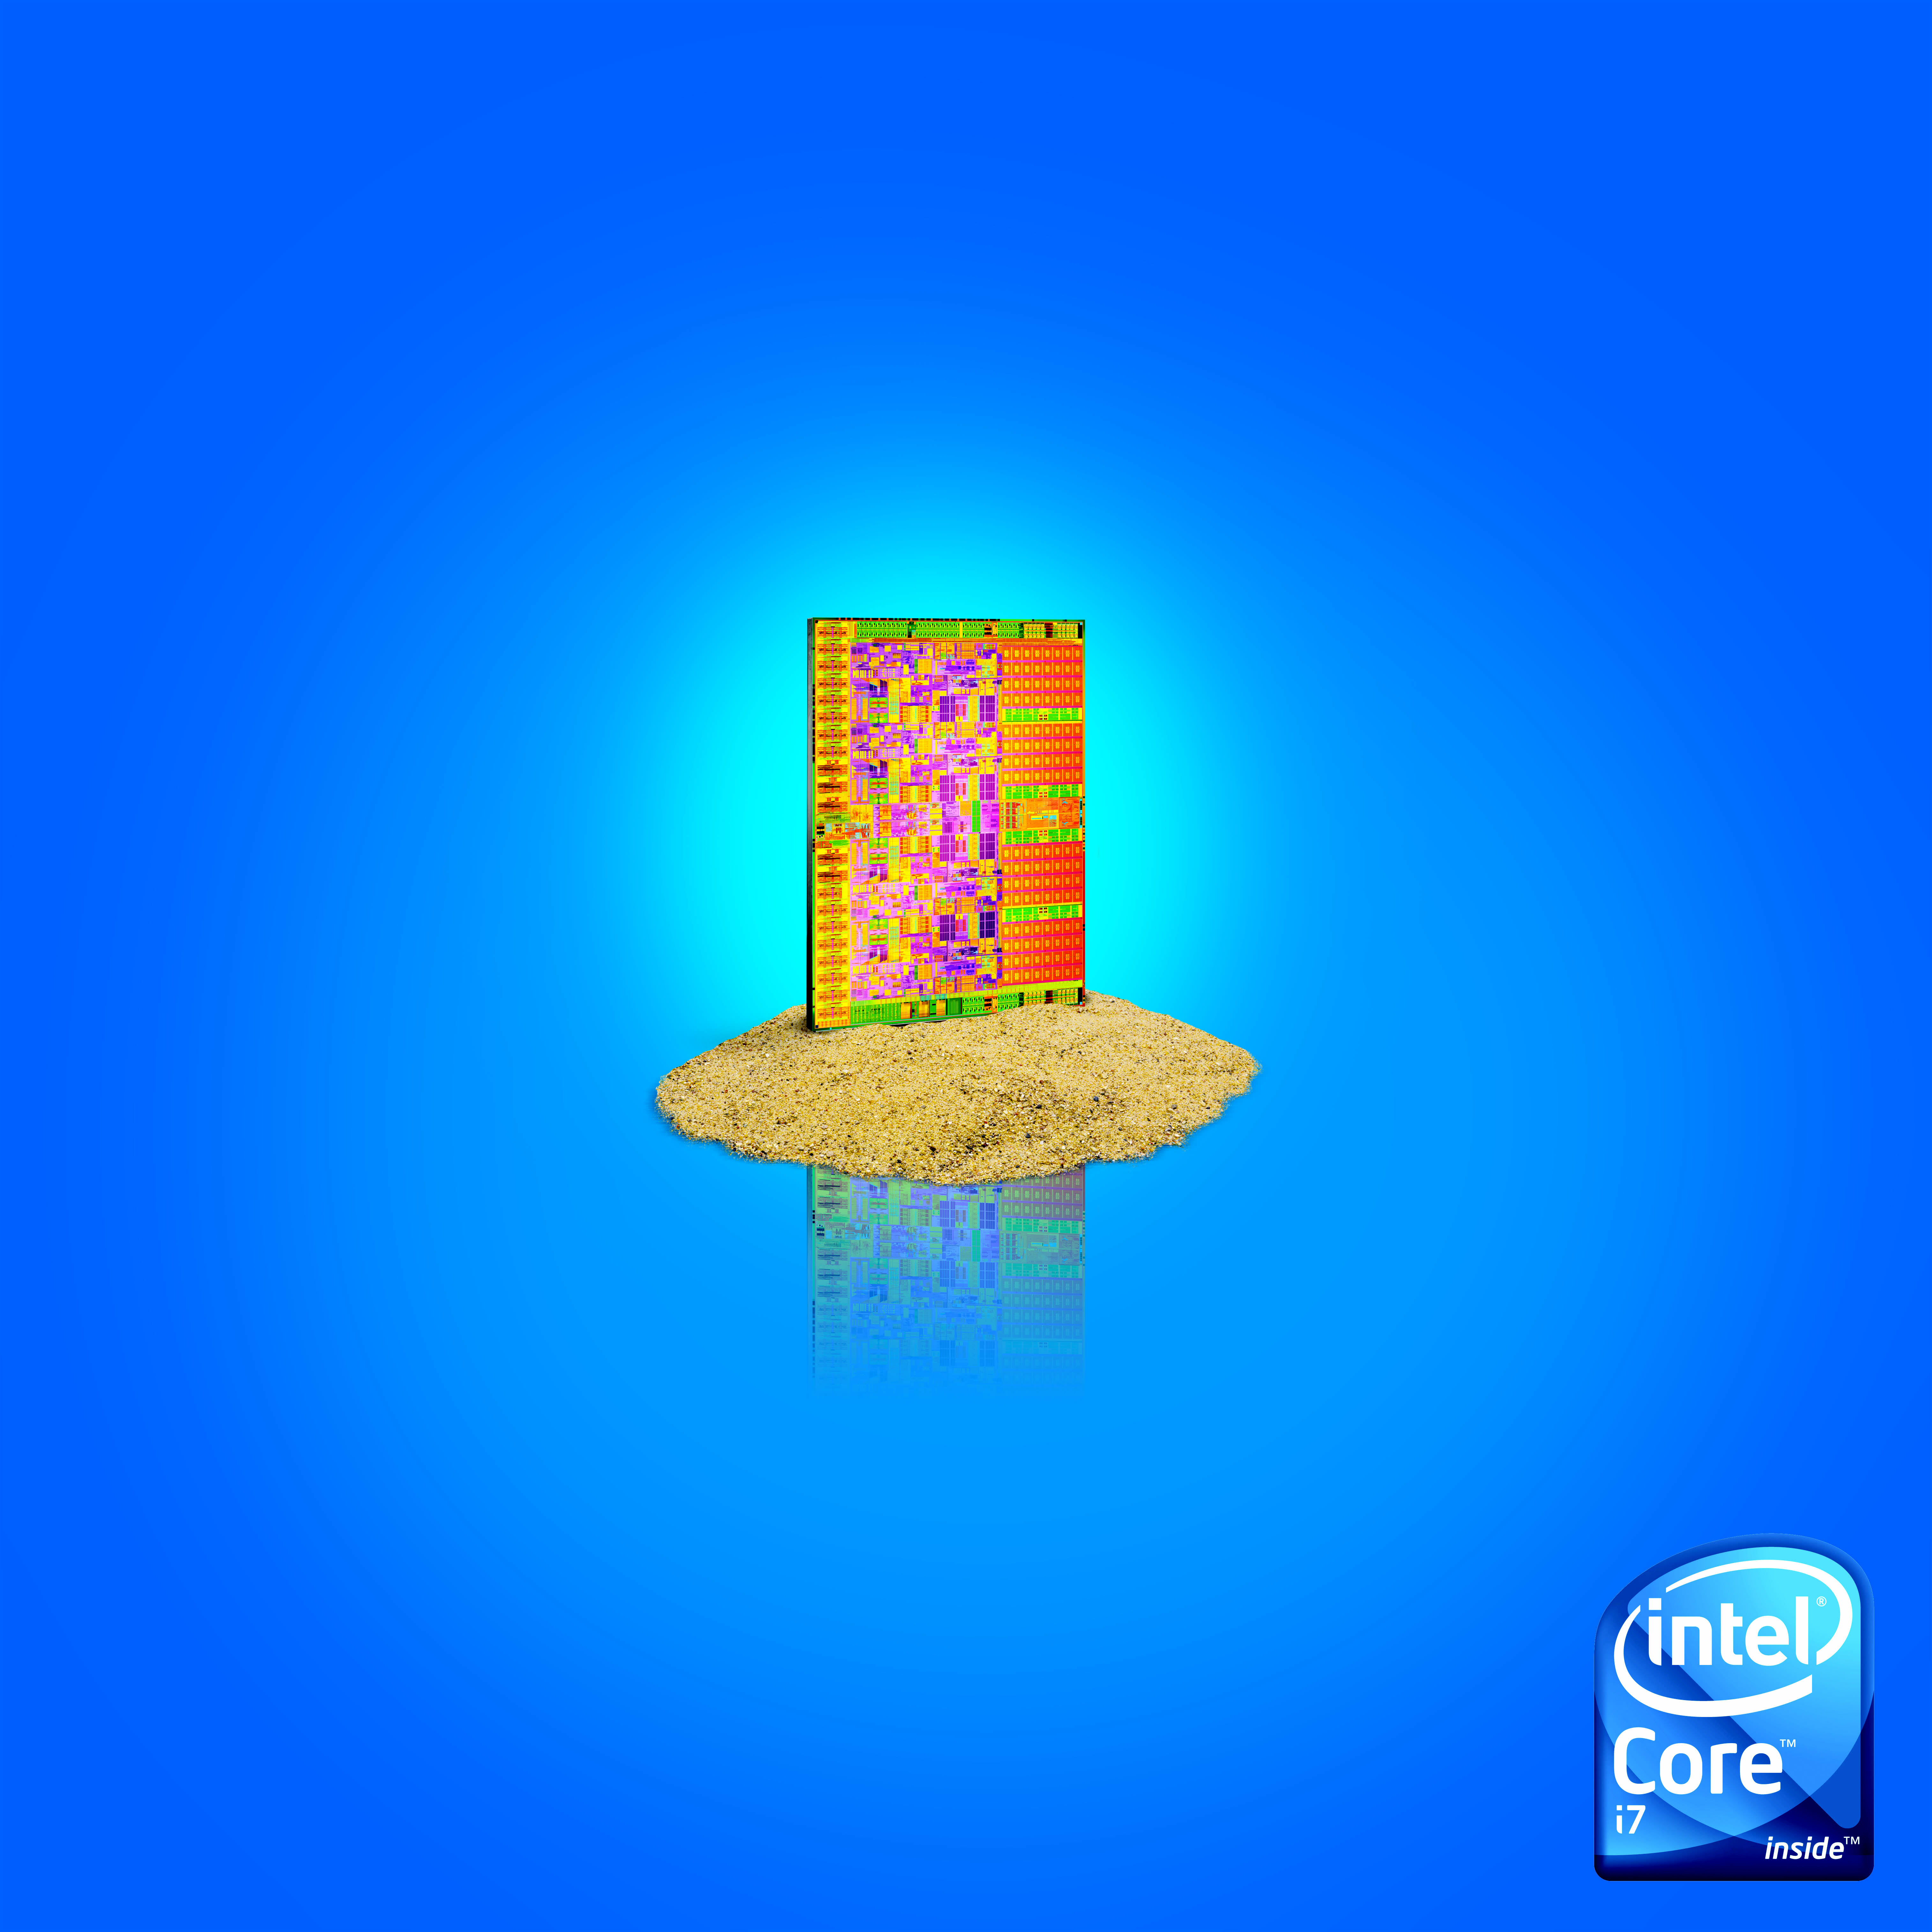 Immagine pubblicata in relazione al seguente contenuto: Intel lancia Core i7, il processore per desktop pi veloce al mondo | Nome immagine: news9033_7.jpg